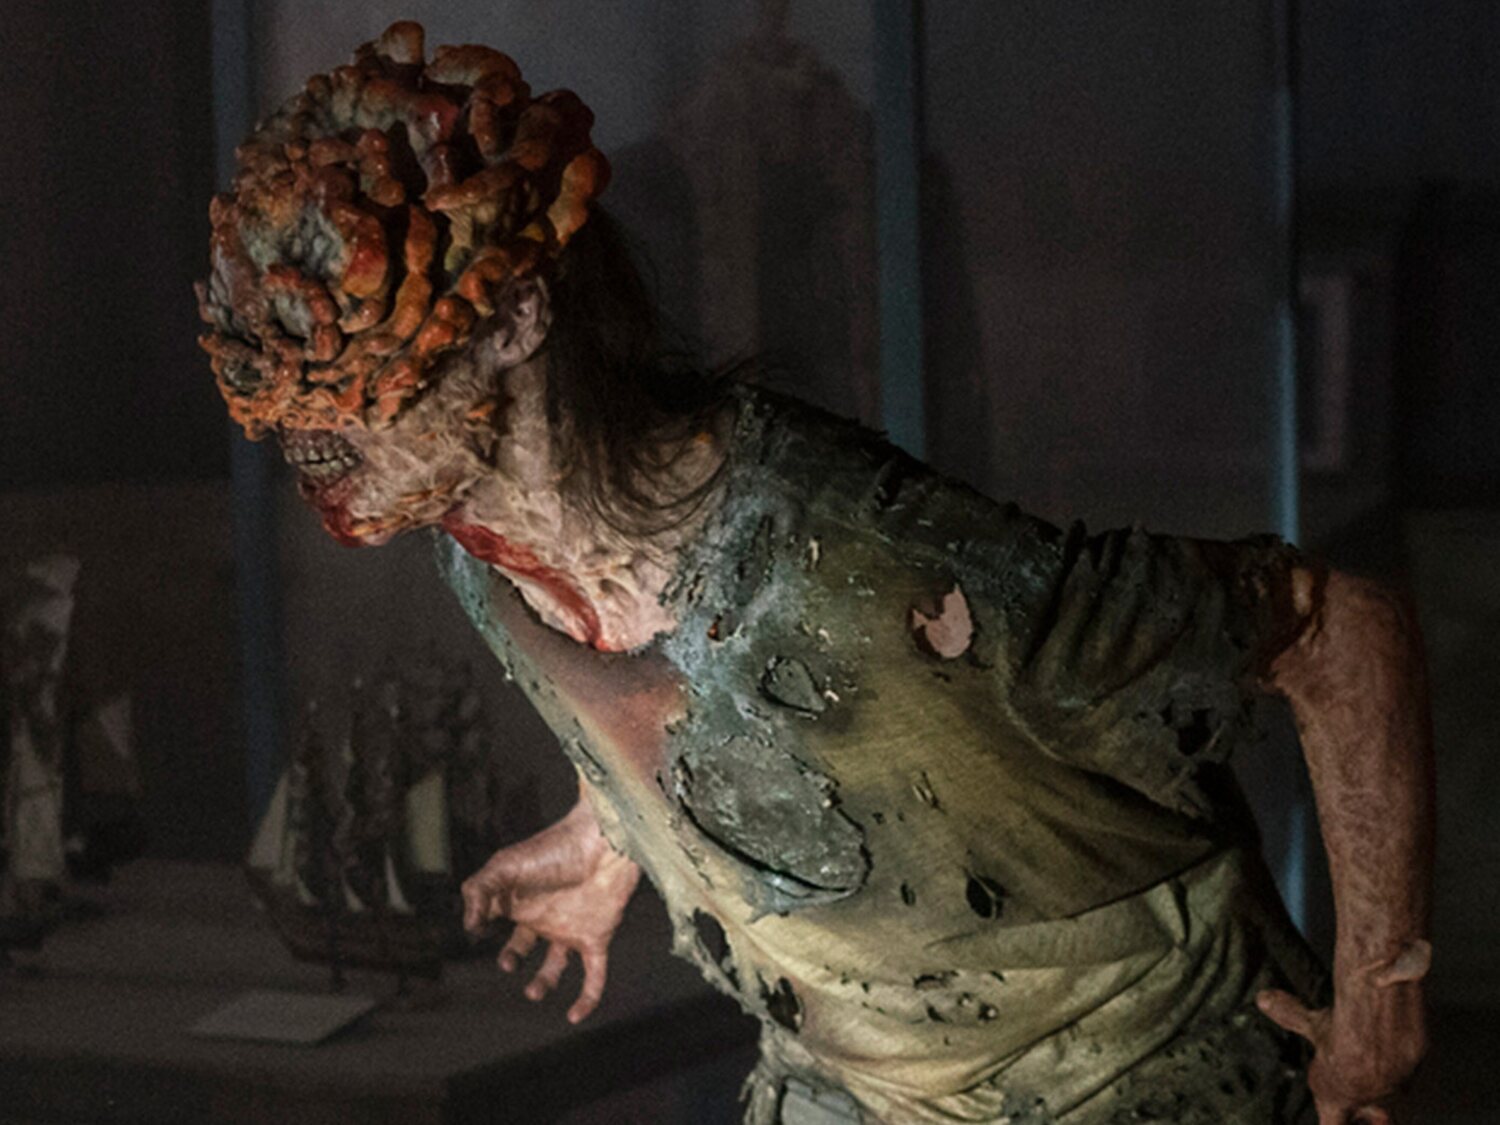 El hongo de 'The Last of Us' existe: ¿podría llegar a afectar a los humanos?